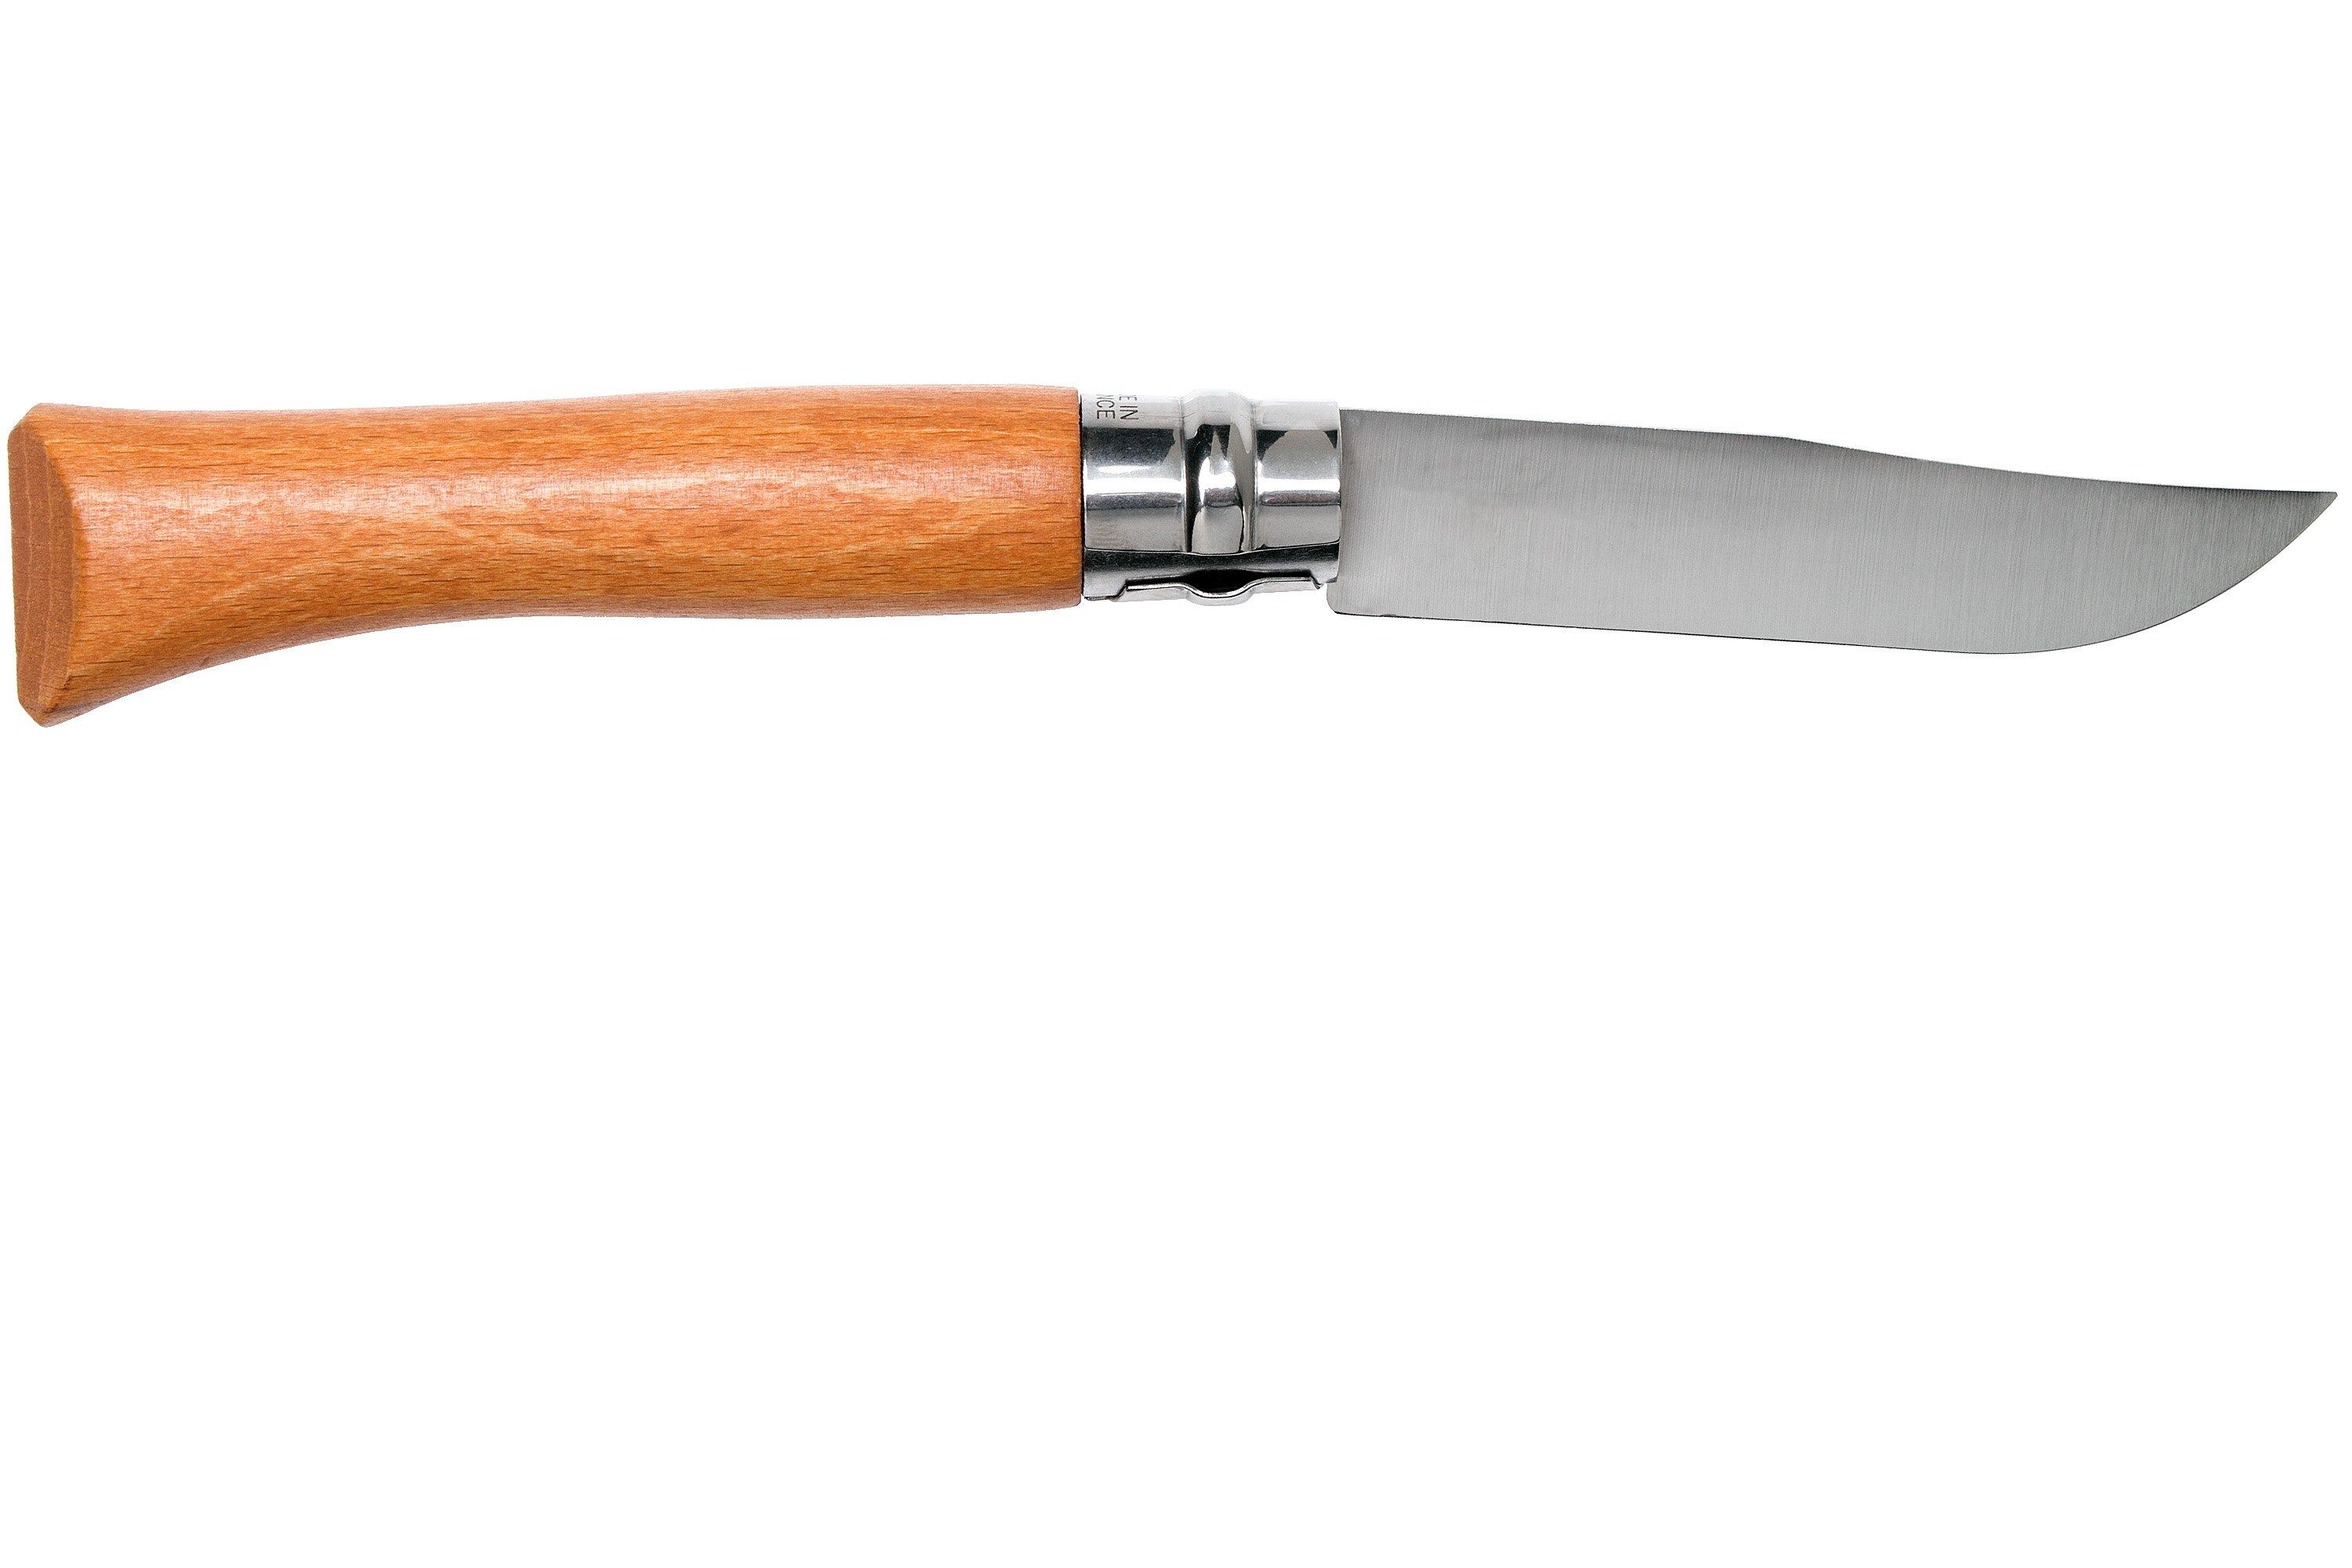 Couteau Opinel Tradition, Manche Hêtre, Acier Carbone, 10cm, #10